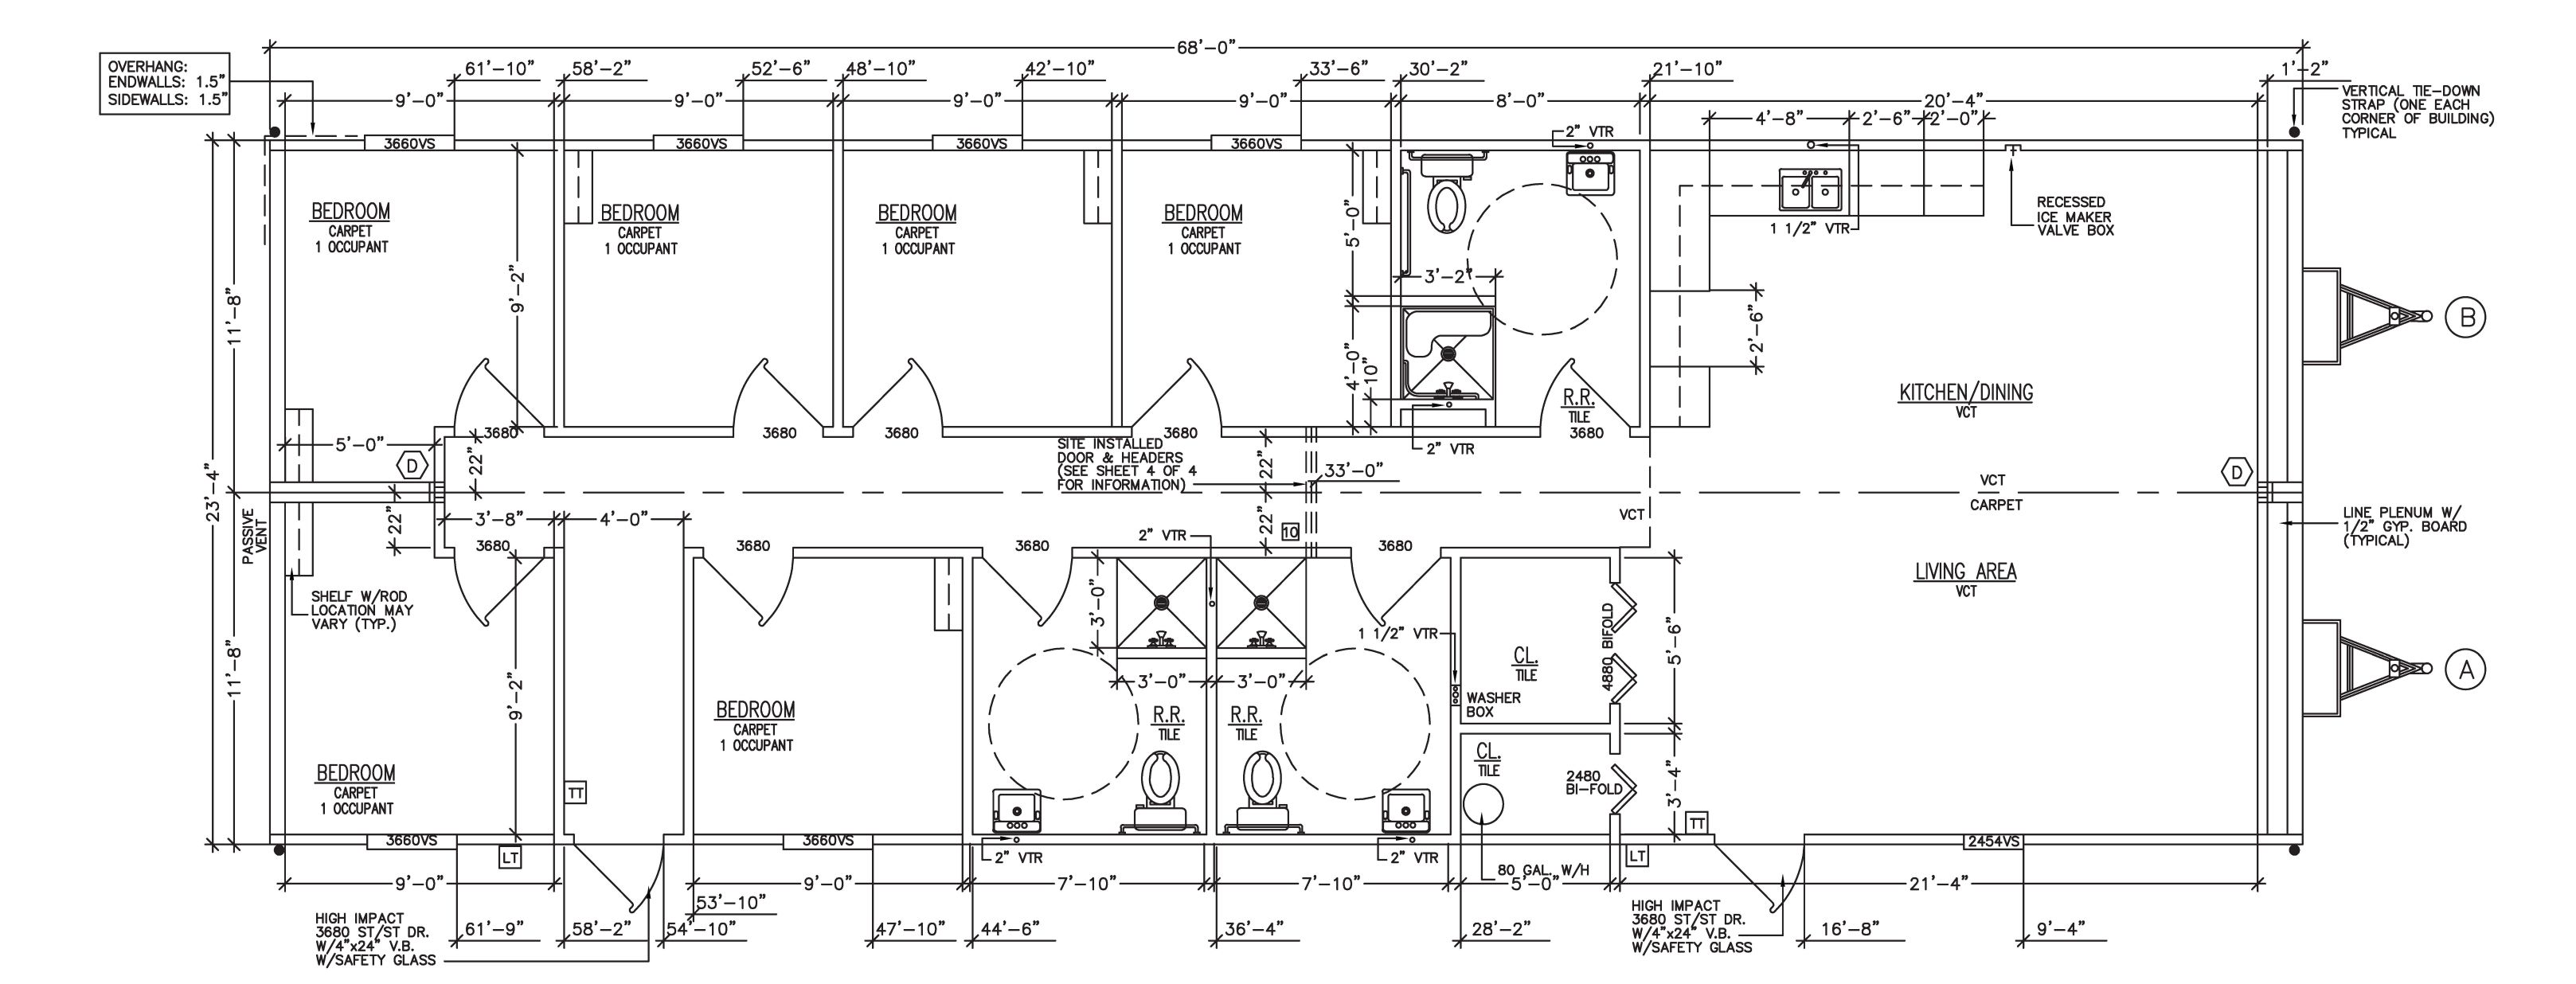 24' x 68' Modular Fire Station Floor Plan